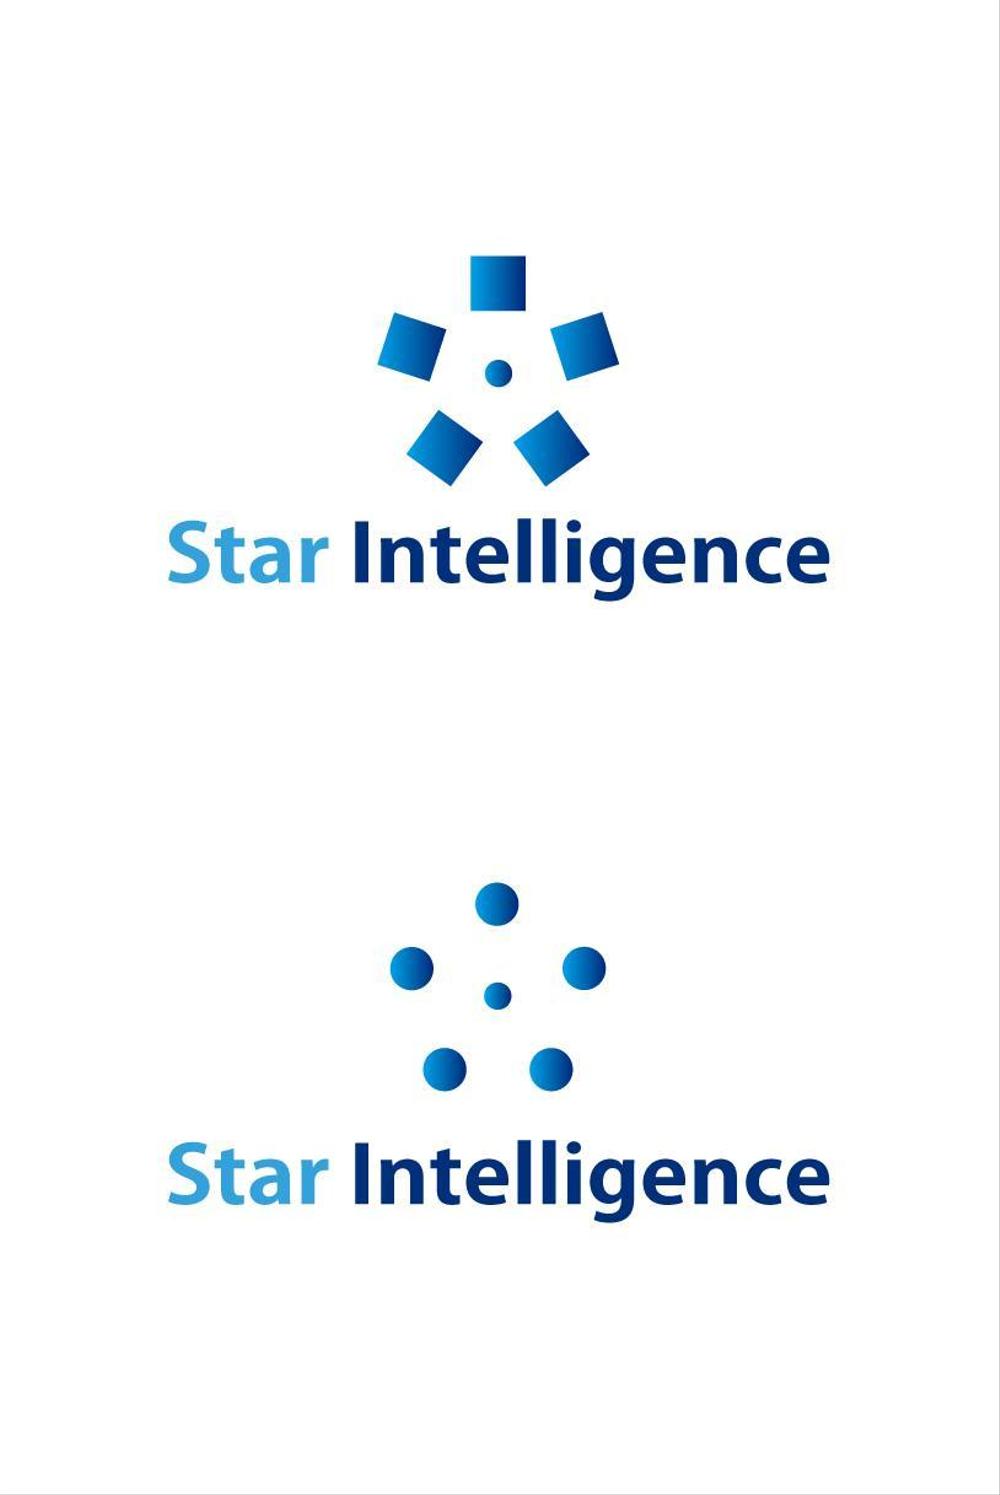 Star Intelligence001.jpg